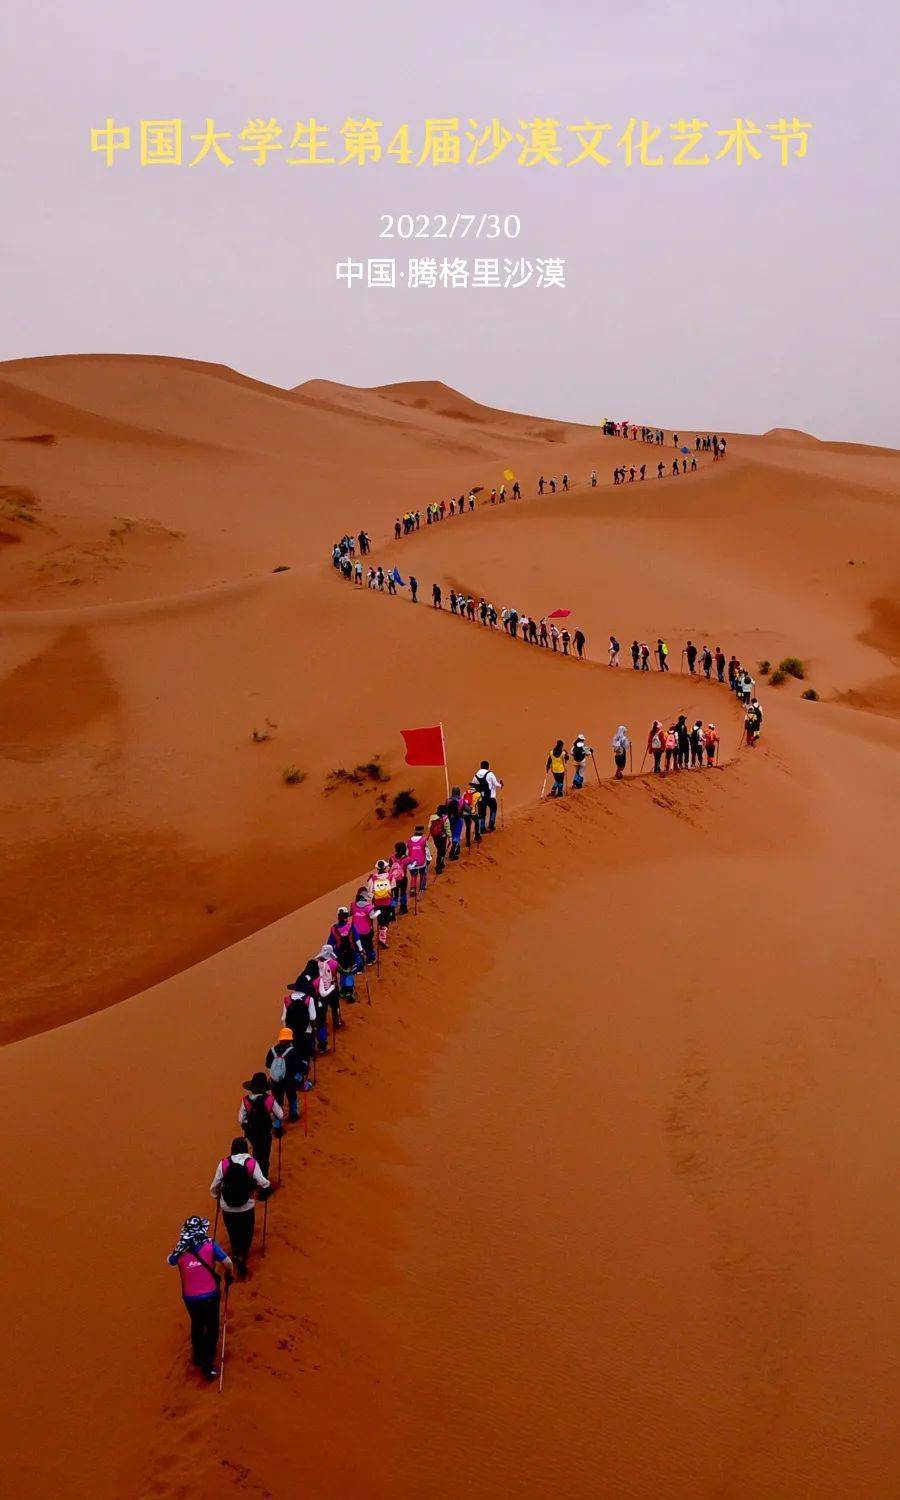 宁夏 I 中国大学生沙漠文化艺术节，第4届来啦